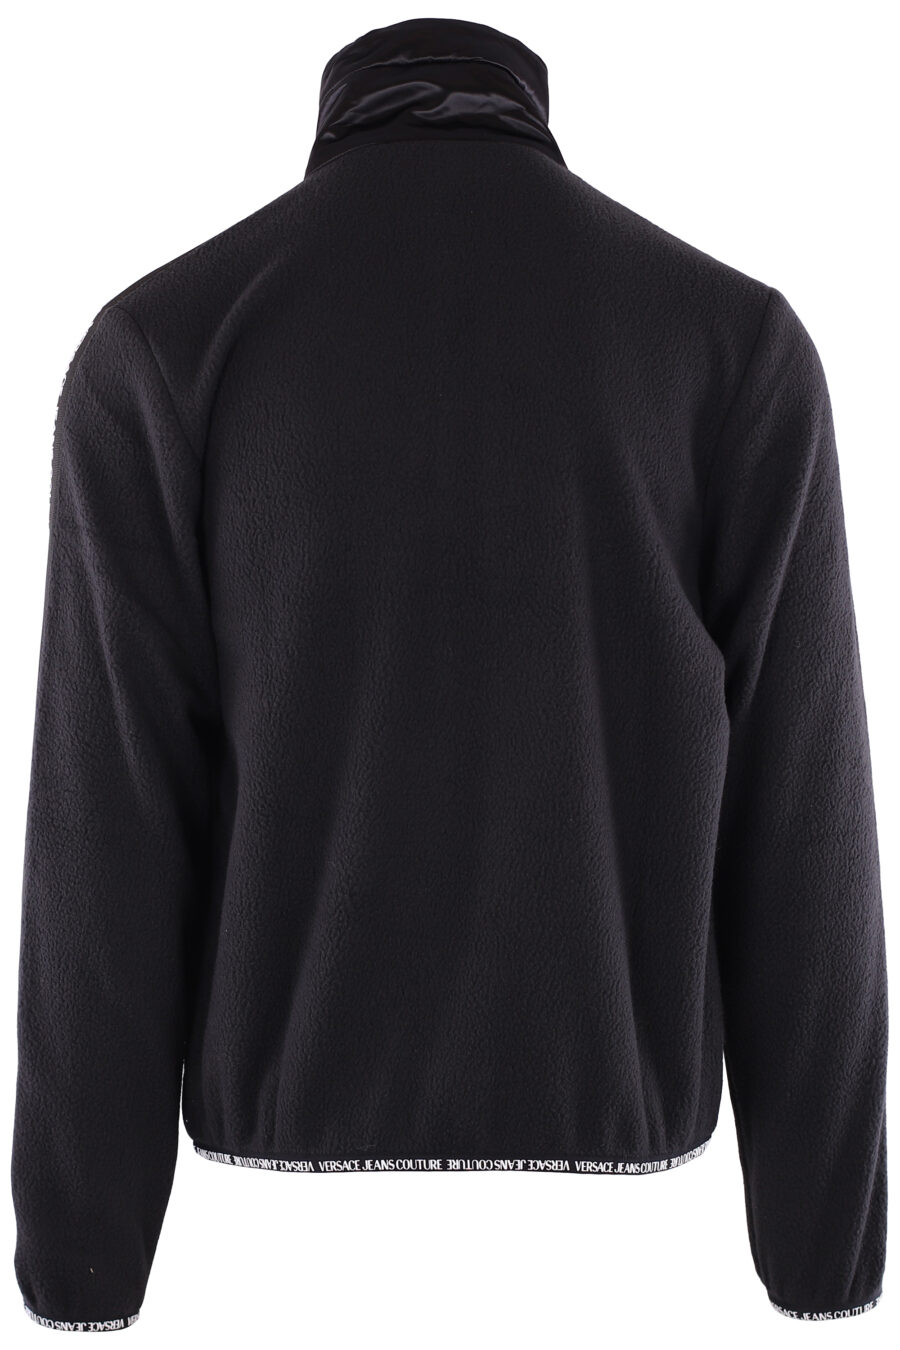 Schwarzes Fleece-Sweatshirt mit Schleifenlogo an den Ärmeln - IMG 6373